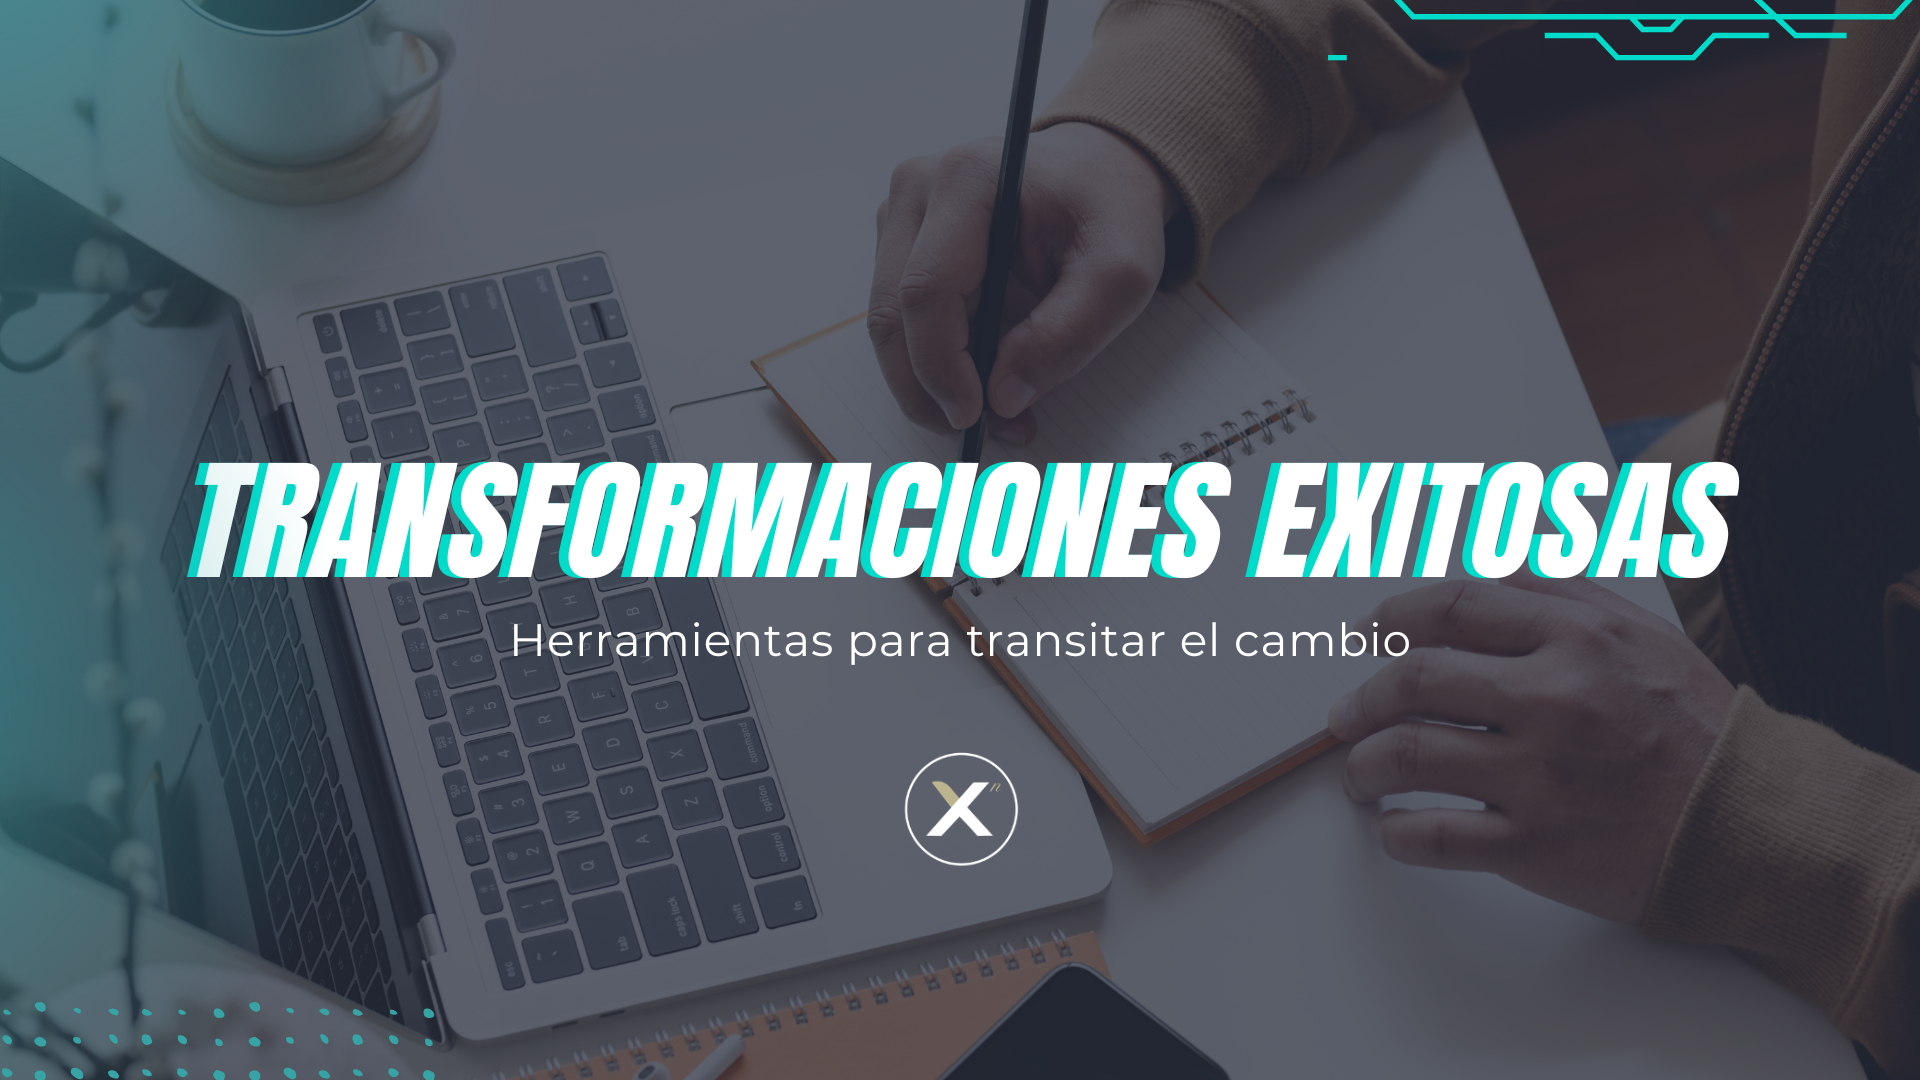 Cursos on demand Xn - Transformaciones Exitosas